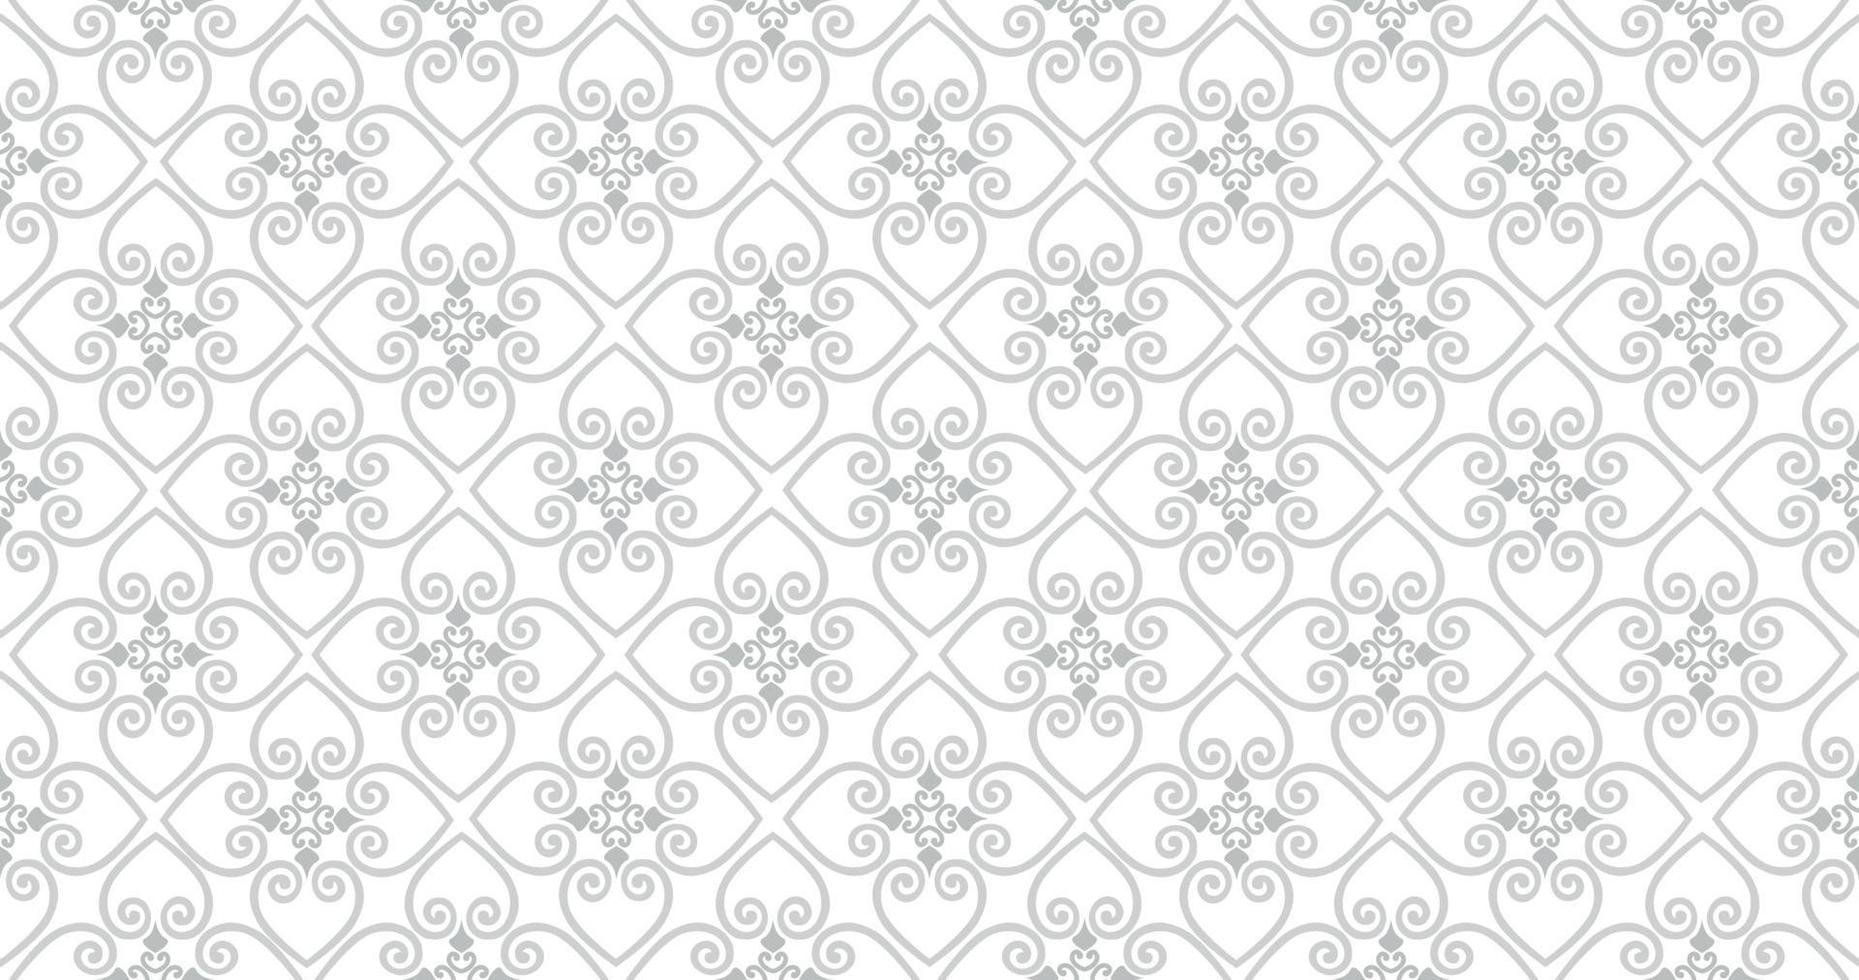 abstracte naadloze patroon. Arabisch lijnornament met geometrische vormen. lineaire bloemen decoratieve textuur. artistieke achtergrond in arabische orient textielstijl. vector